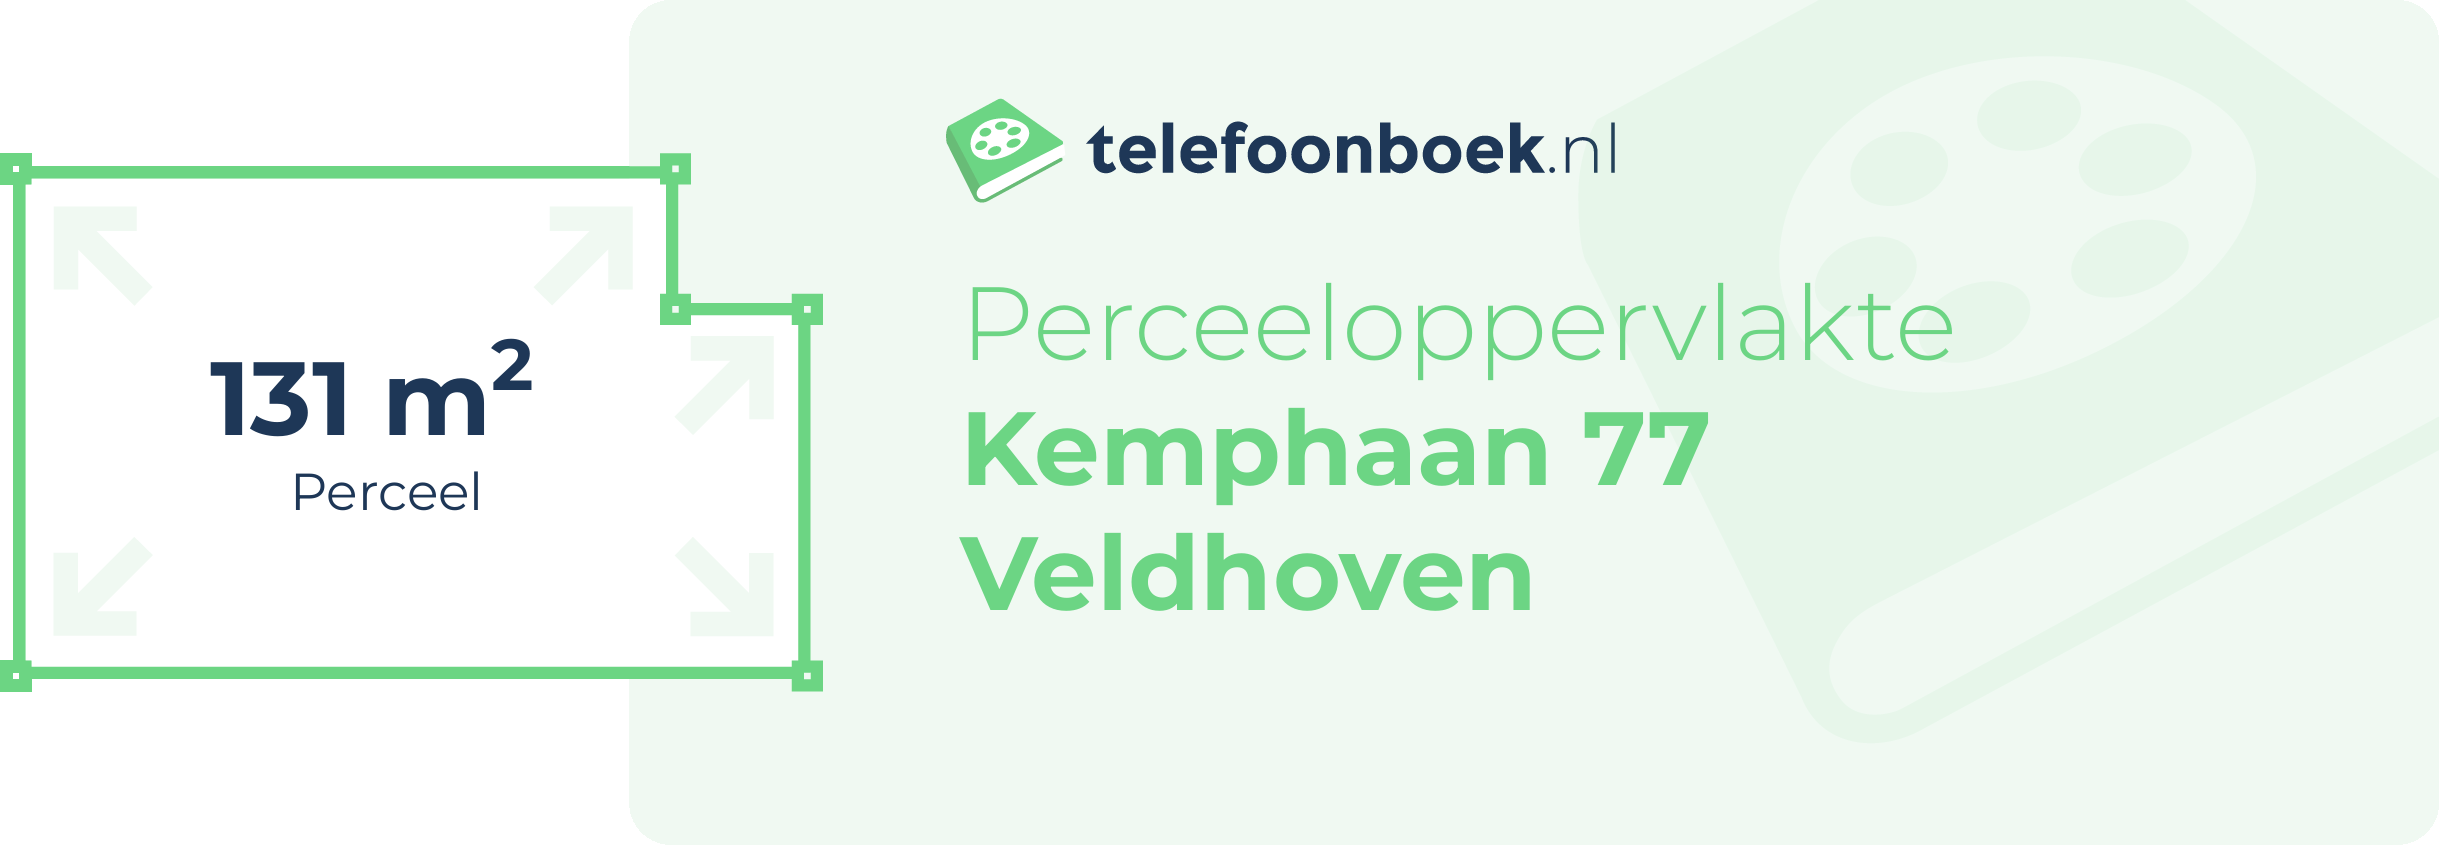 Perceeloppervlakte Kemphaan 77 Veldhoven